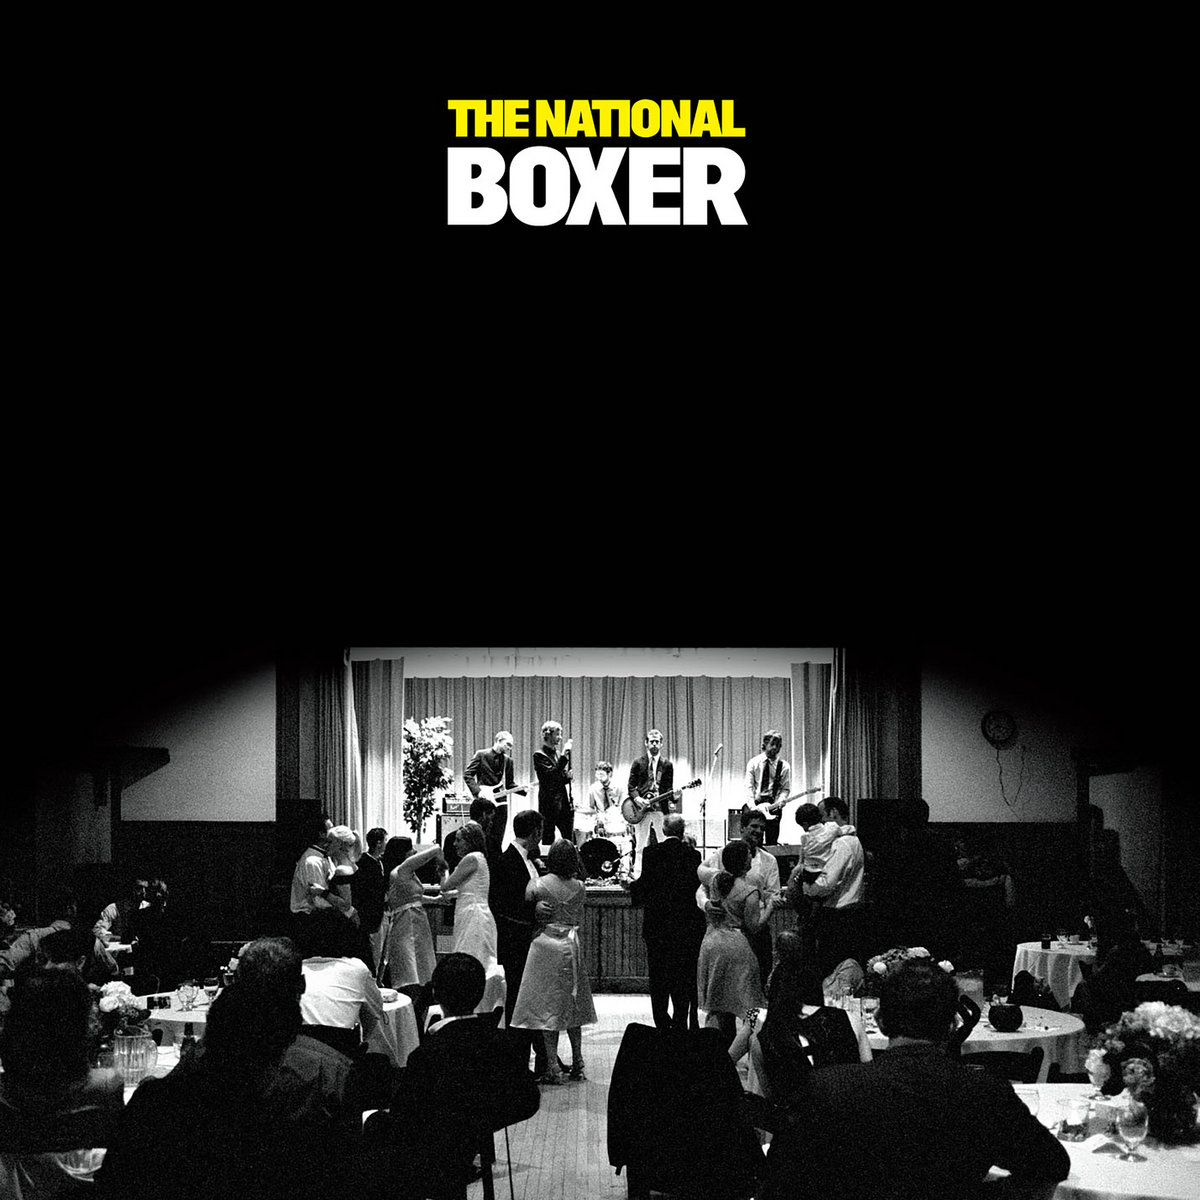 Album associé à la This Time Next Year Rodney par Arbor Ales. The National - Boxer